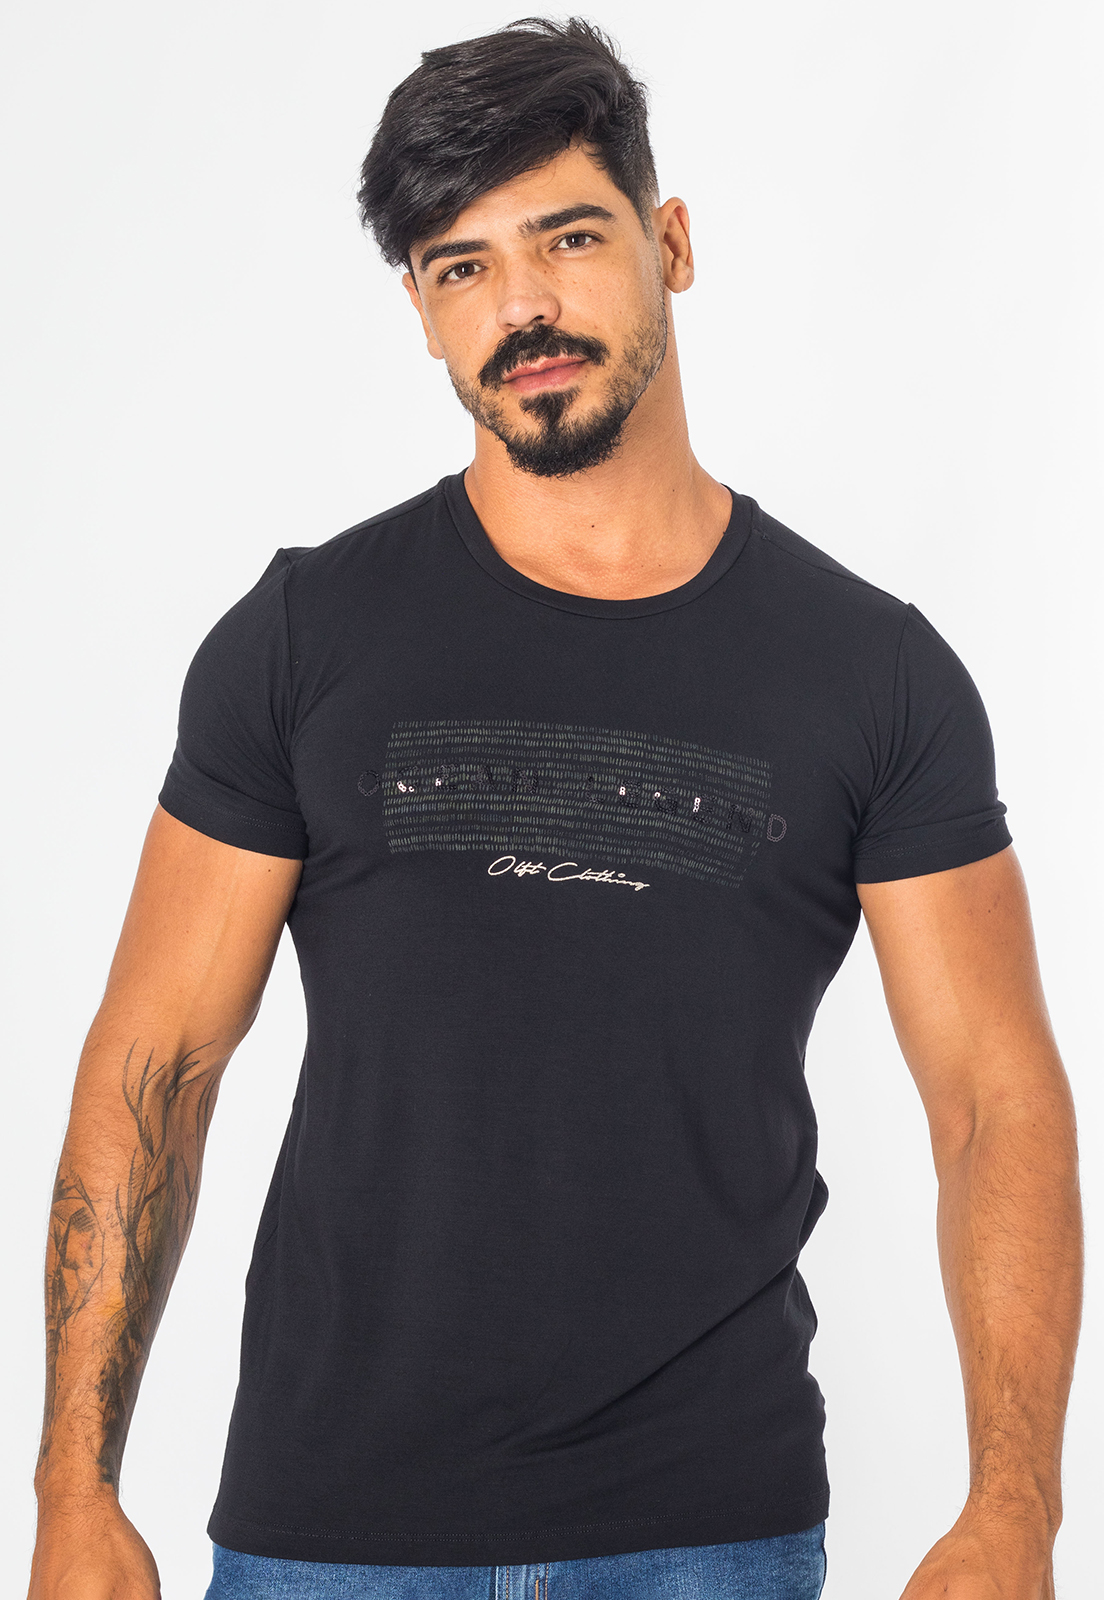 Camiseta Masculina Viscolycra Premium Casual Com Aplicação